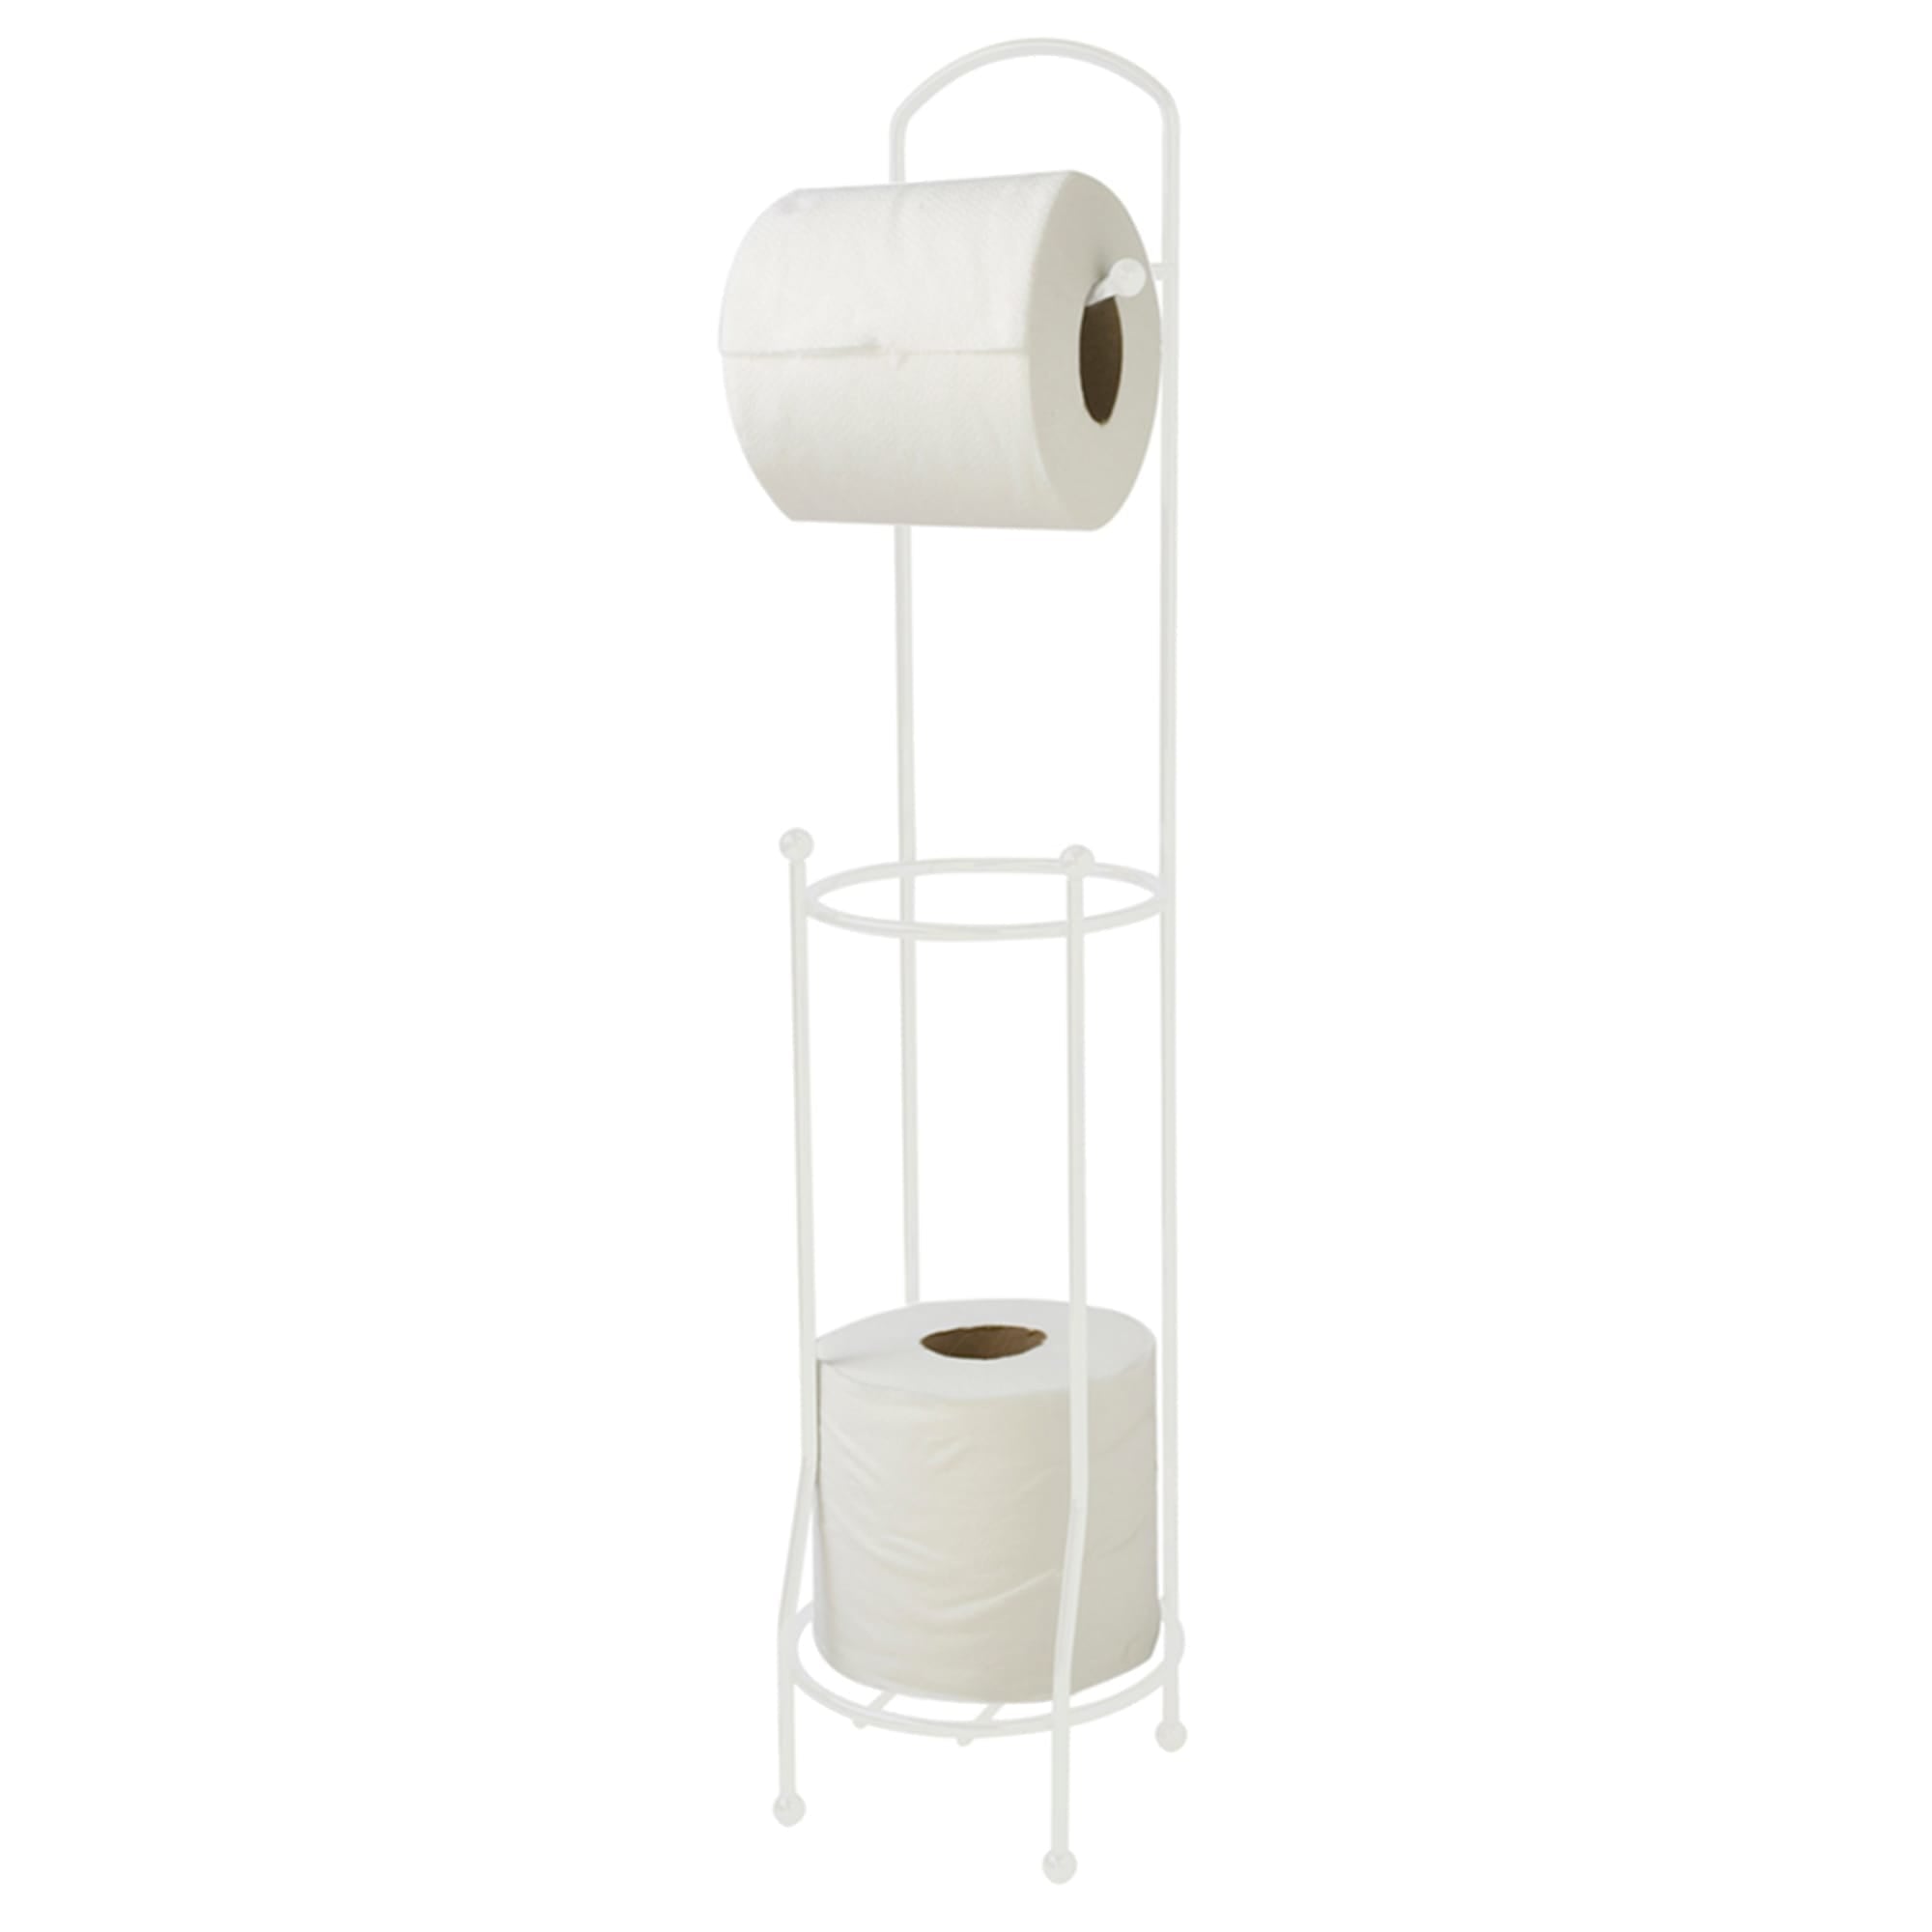 Pink Toilet Paper Holder Stand Tissue Holder for Bathroom Floor Standing  Toilet Roll Dispenser Storage B09TQYG219 - The Home Depot